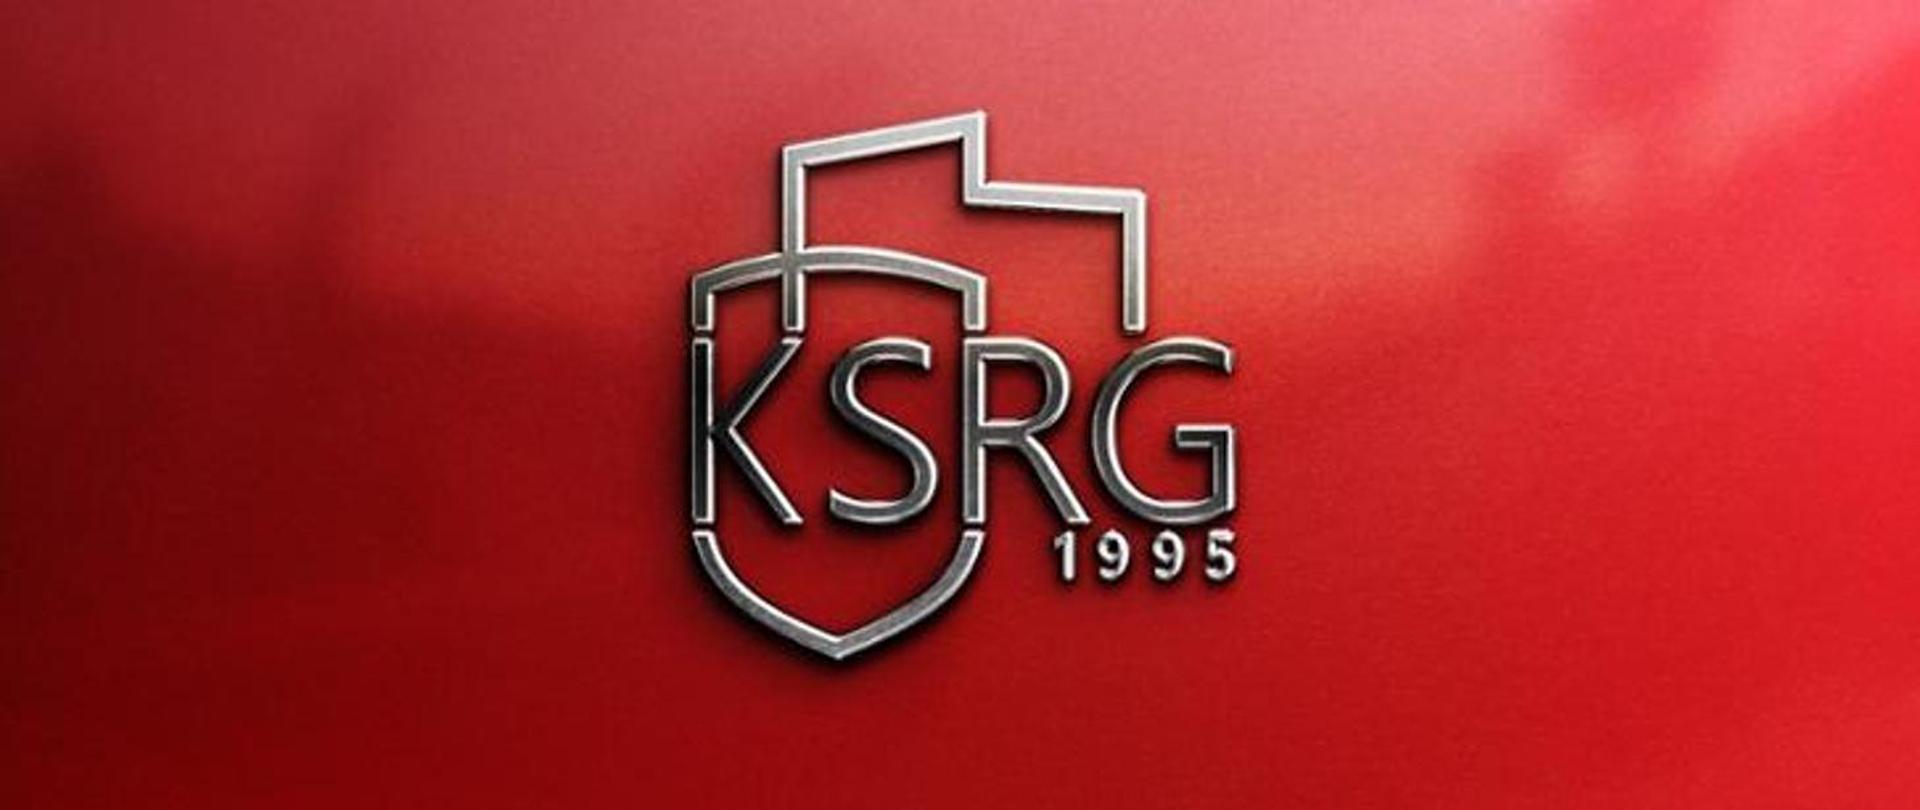 Na zdjęciu widać logotyp ksrg na purpurowym tle 